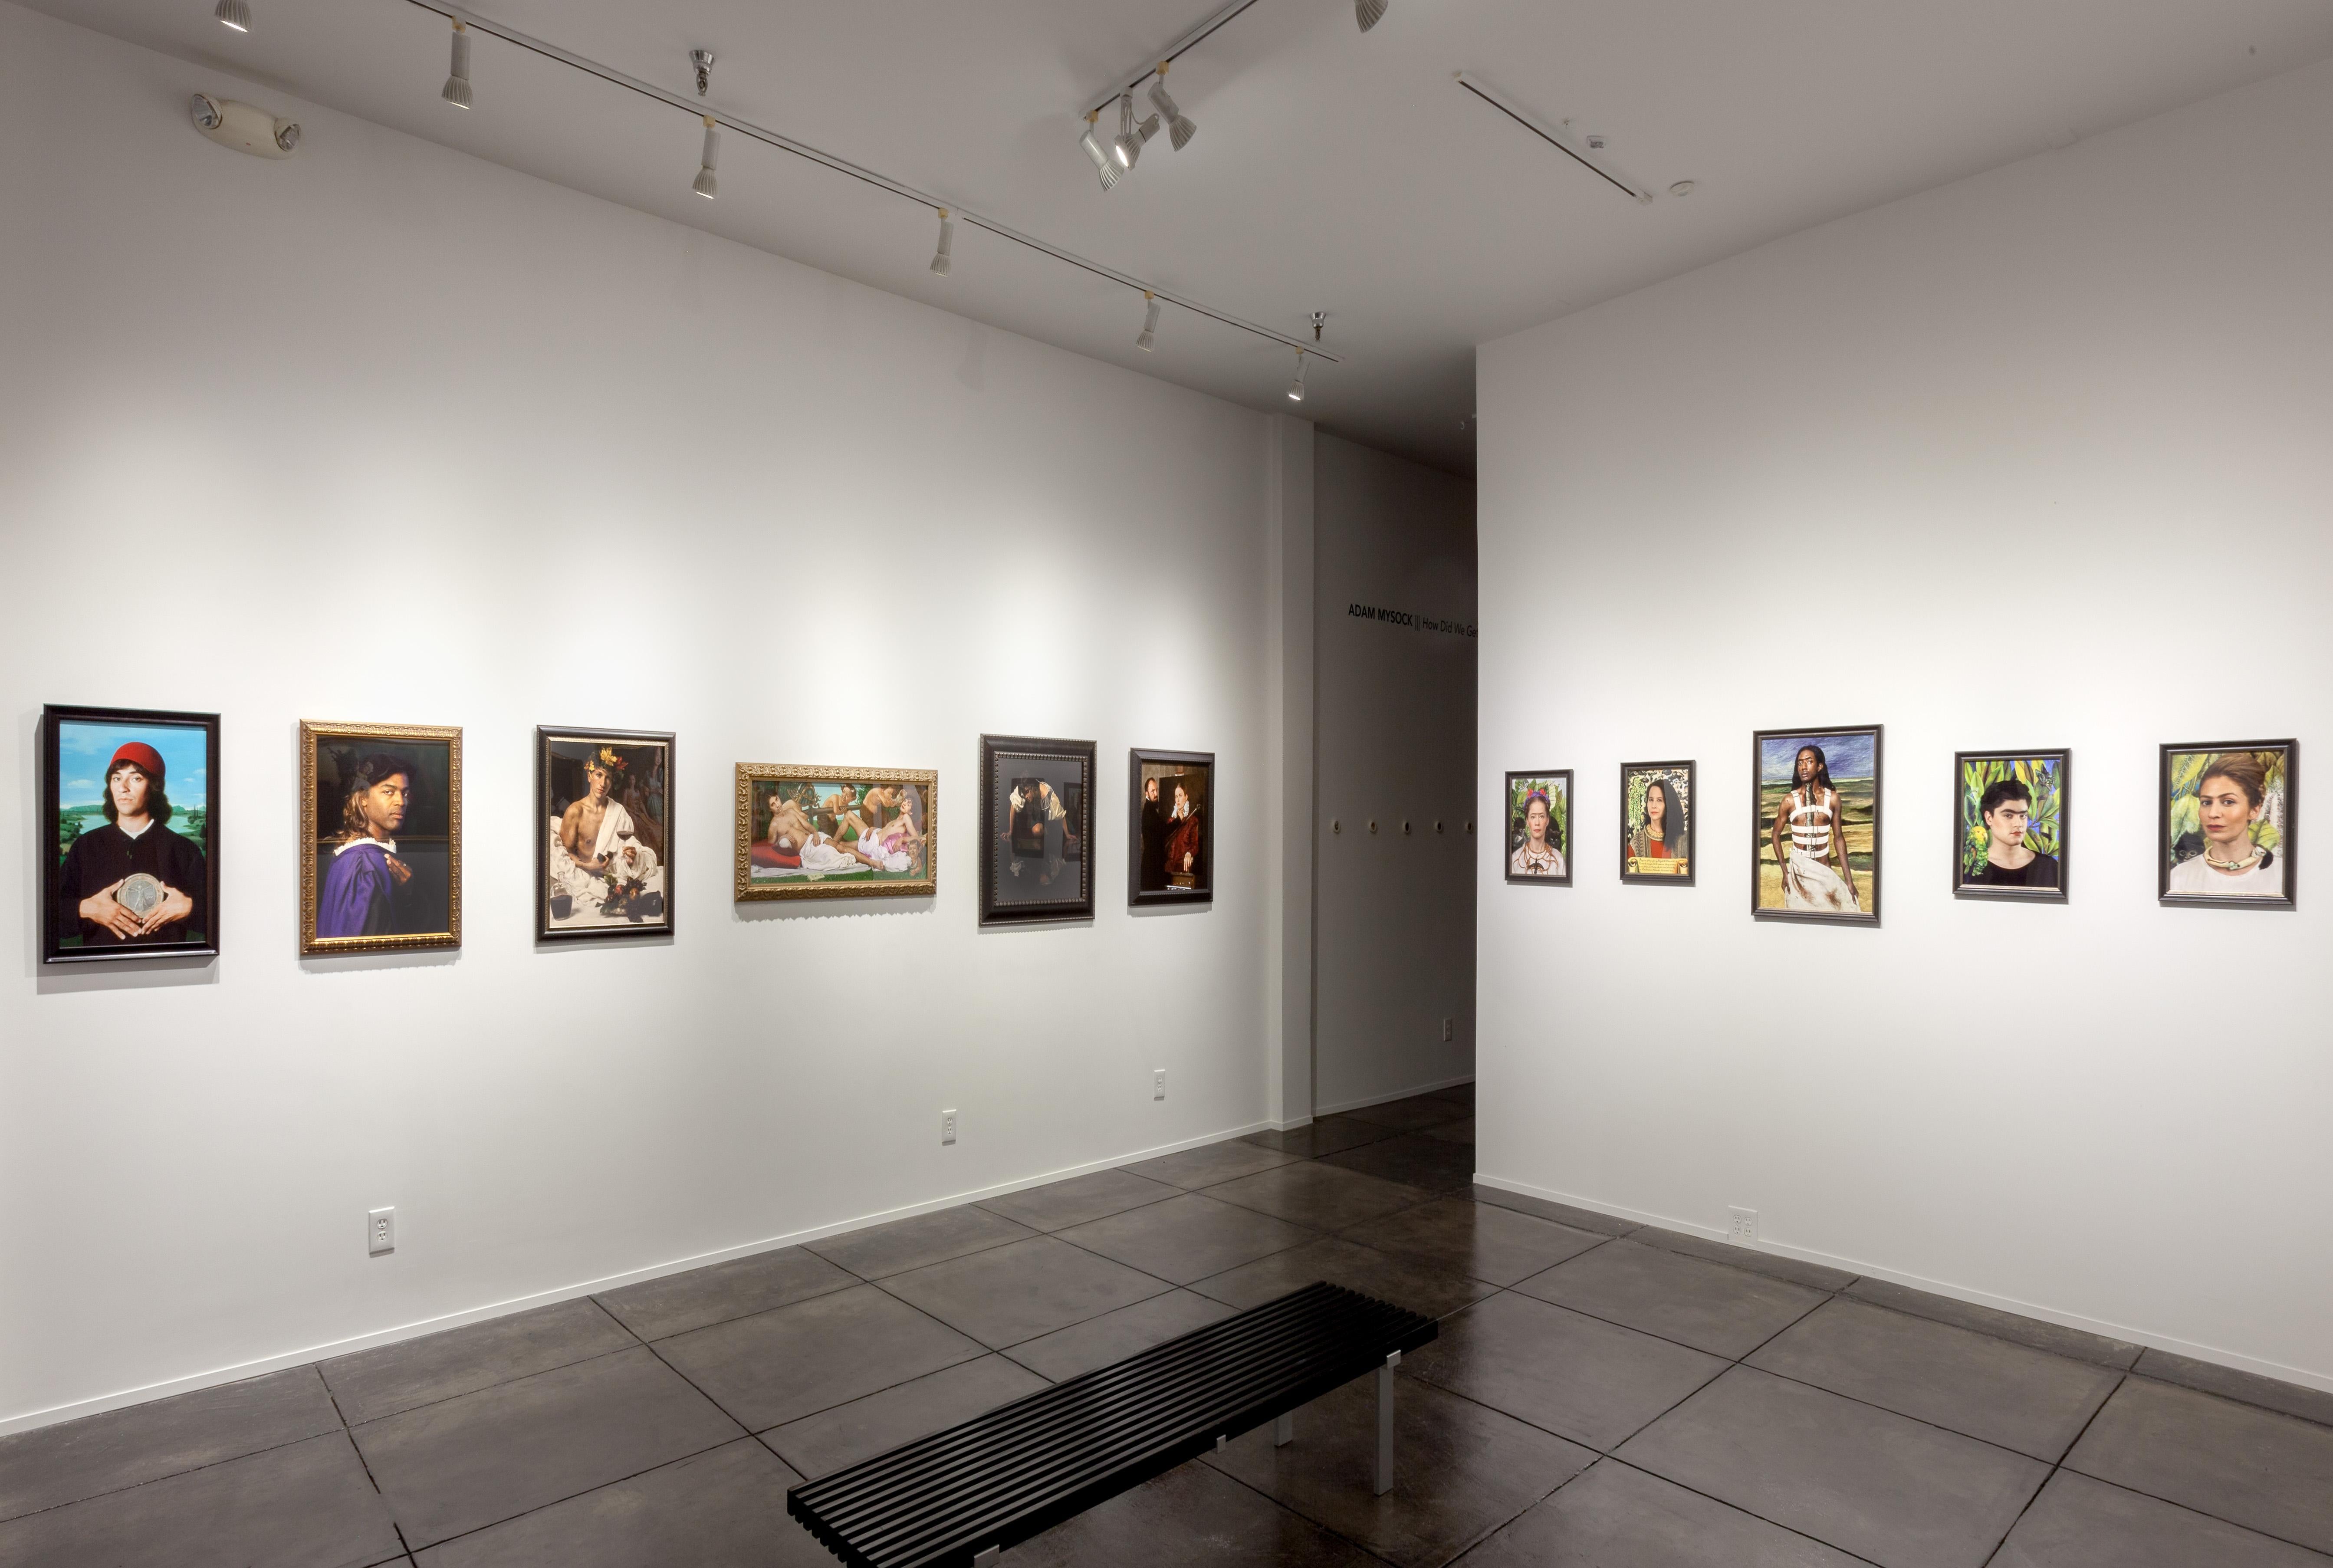 Ausgabe 1 von 3, 2 APs
Großes Format: 36 x 28 Zoll


ERKLÄRUNG:
e2, eine Zusammenarbeit zwischen den Künstlern Elizabeth Kleinveld und Epaul Julien aus New Orleans, interpretiert ikonische Bilder aus der Kunstgeschichte neu, um die Insellage des